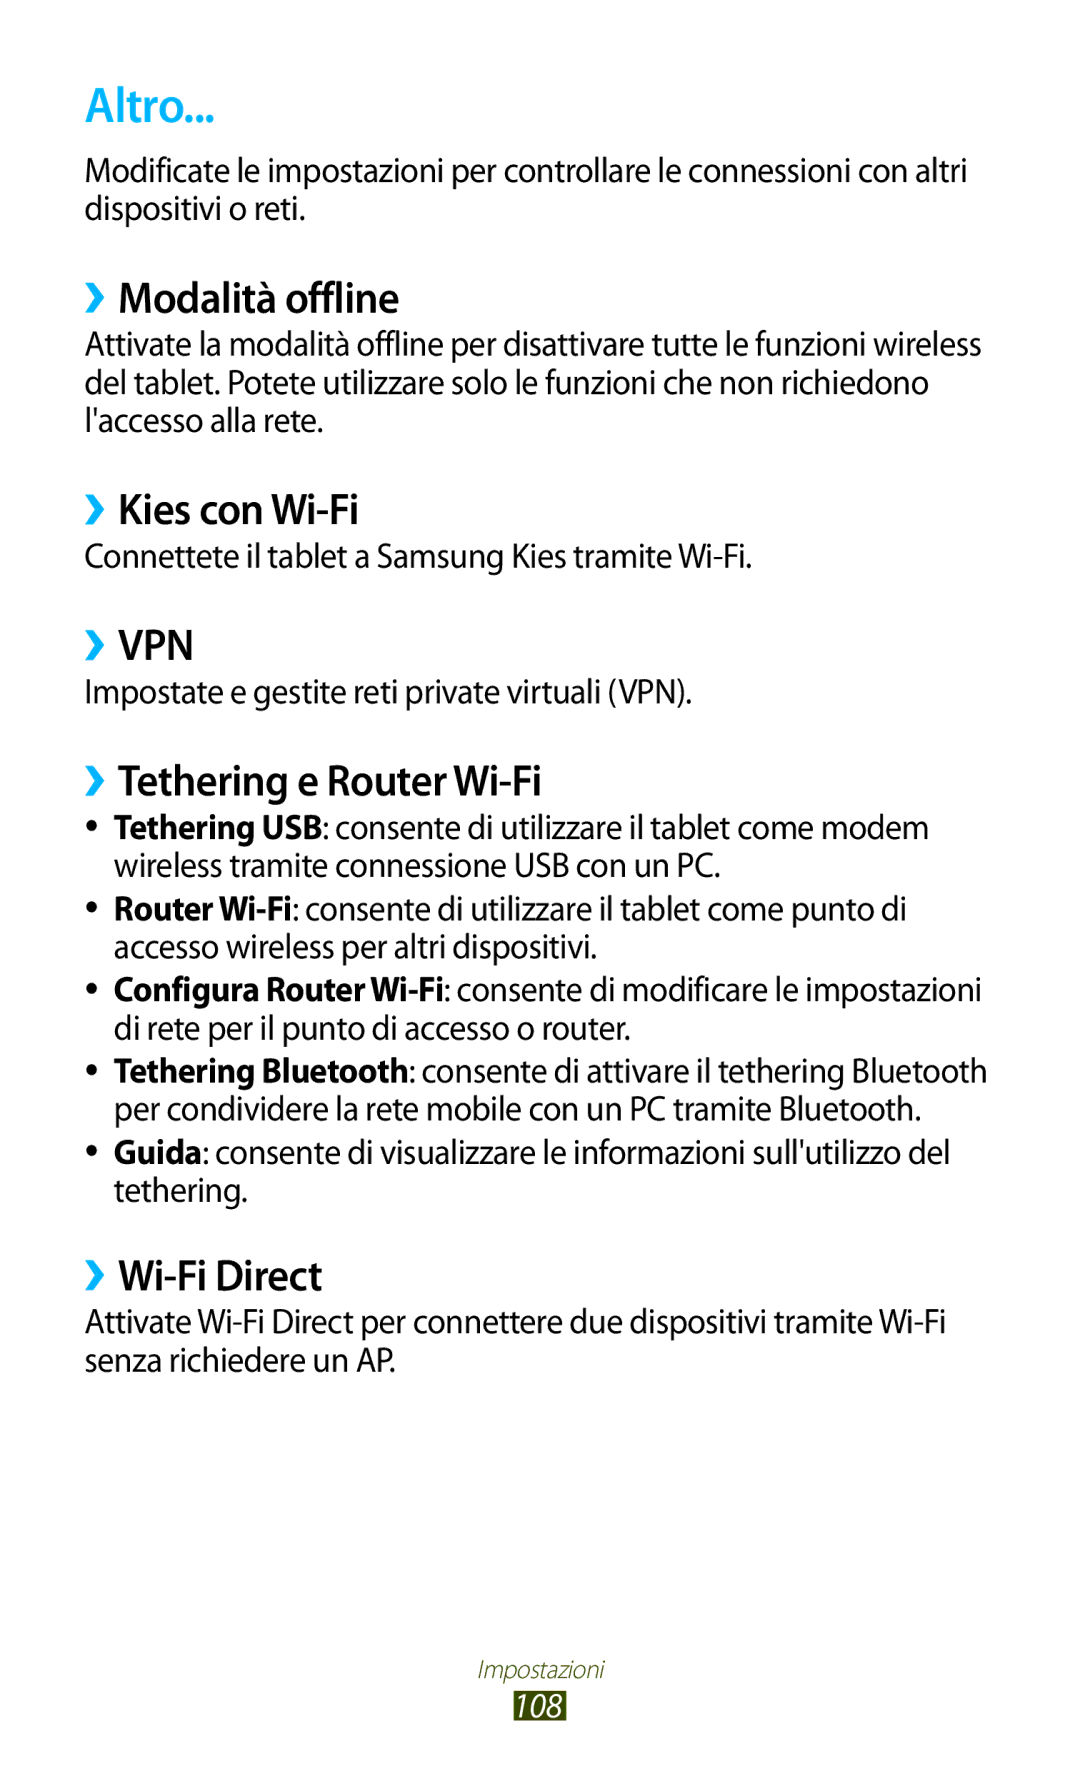 Samsung GT-P7500UWDOMN manual Altro, ››Modalità offline, ››Kies con Wi-Fi, ››Tethering e Router Wi-Fi, ››Wi-Fi Direct 